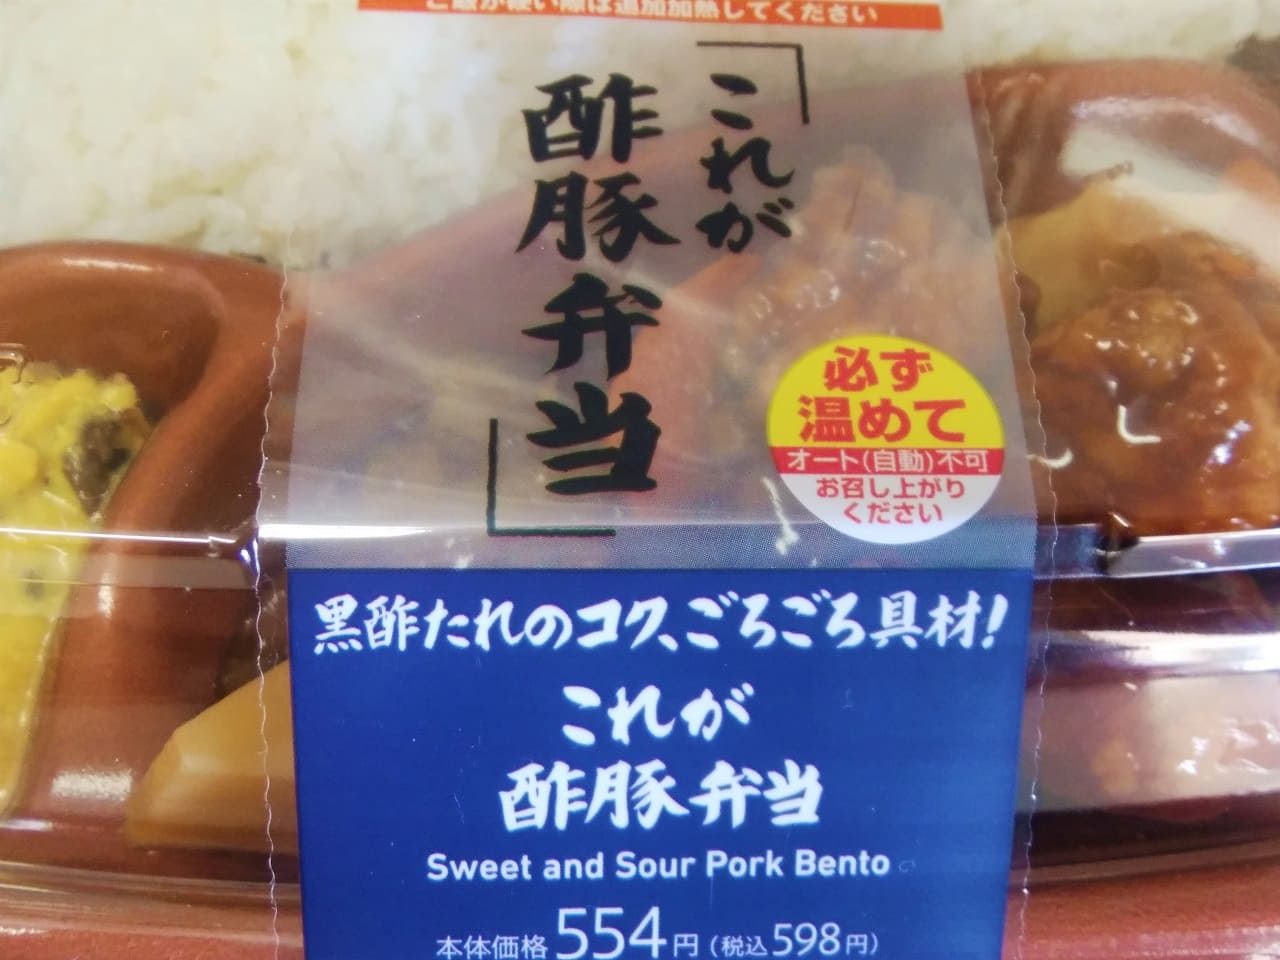 これが酢豚弁当のパッケージ